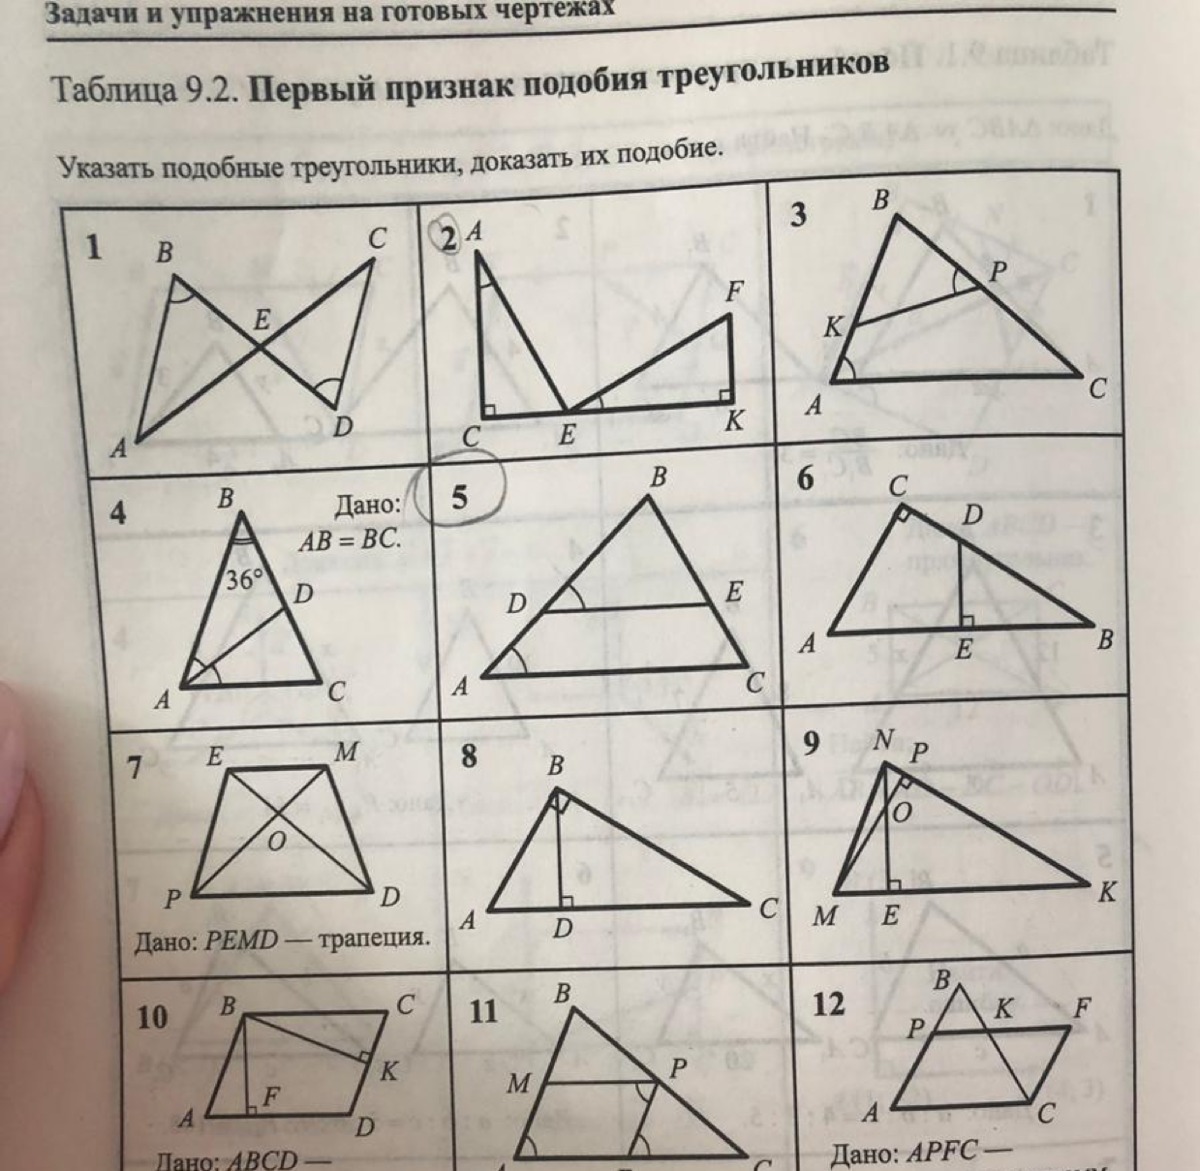 Задачи на готовых чертежах треугольники. 1 Признак подобия треугольников задачи. Первый признак подобия треугольников 8 класс задачи. Подобные треугольники задачи на готовых чертежах. Признаки подобия треугольников задачи по карточками.